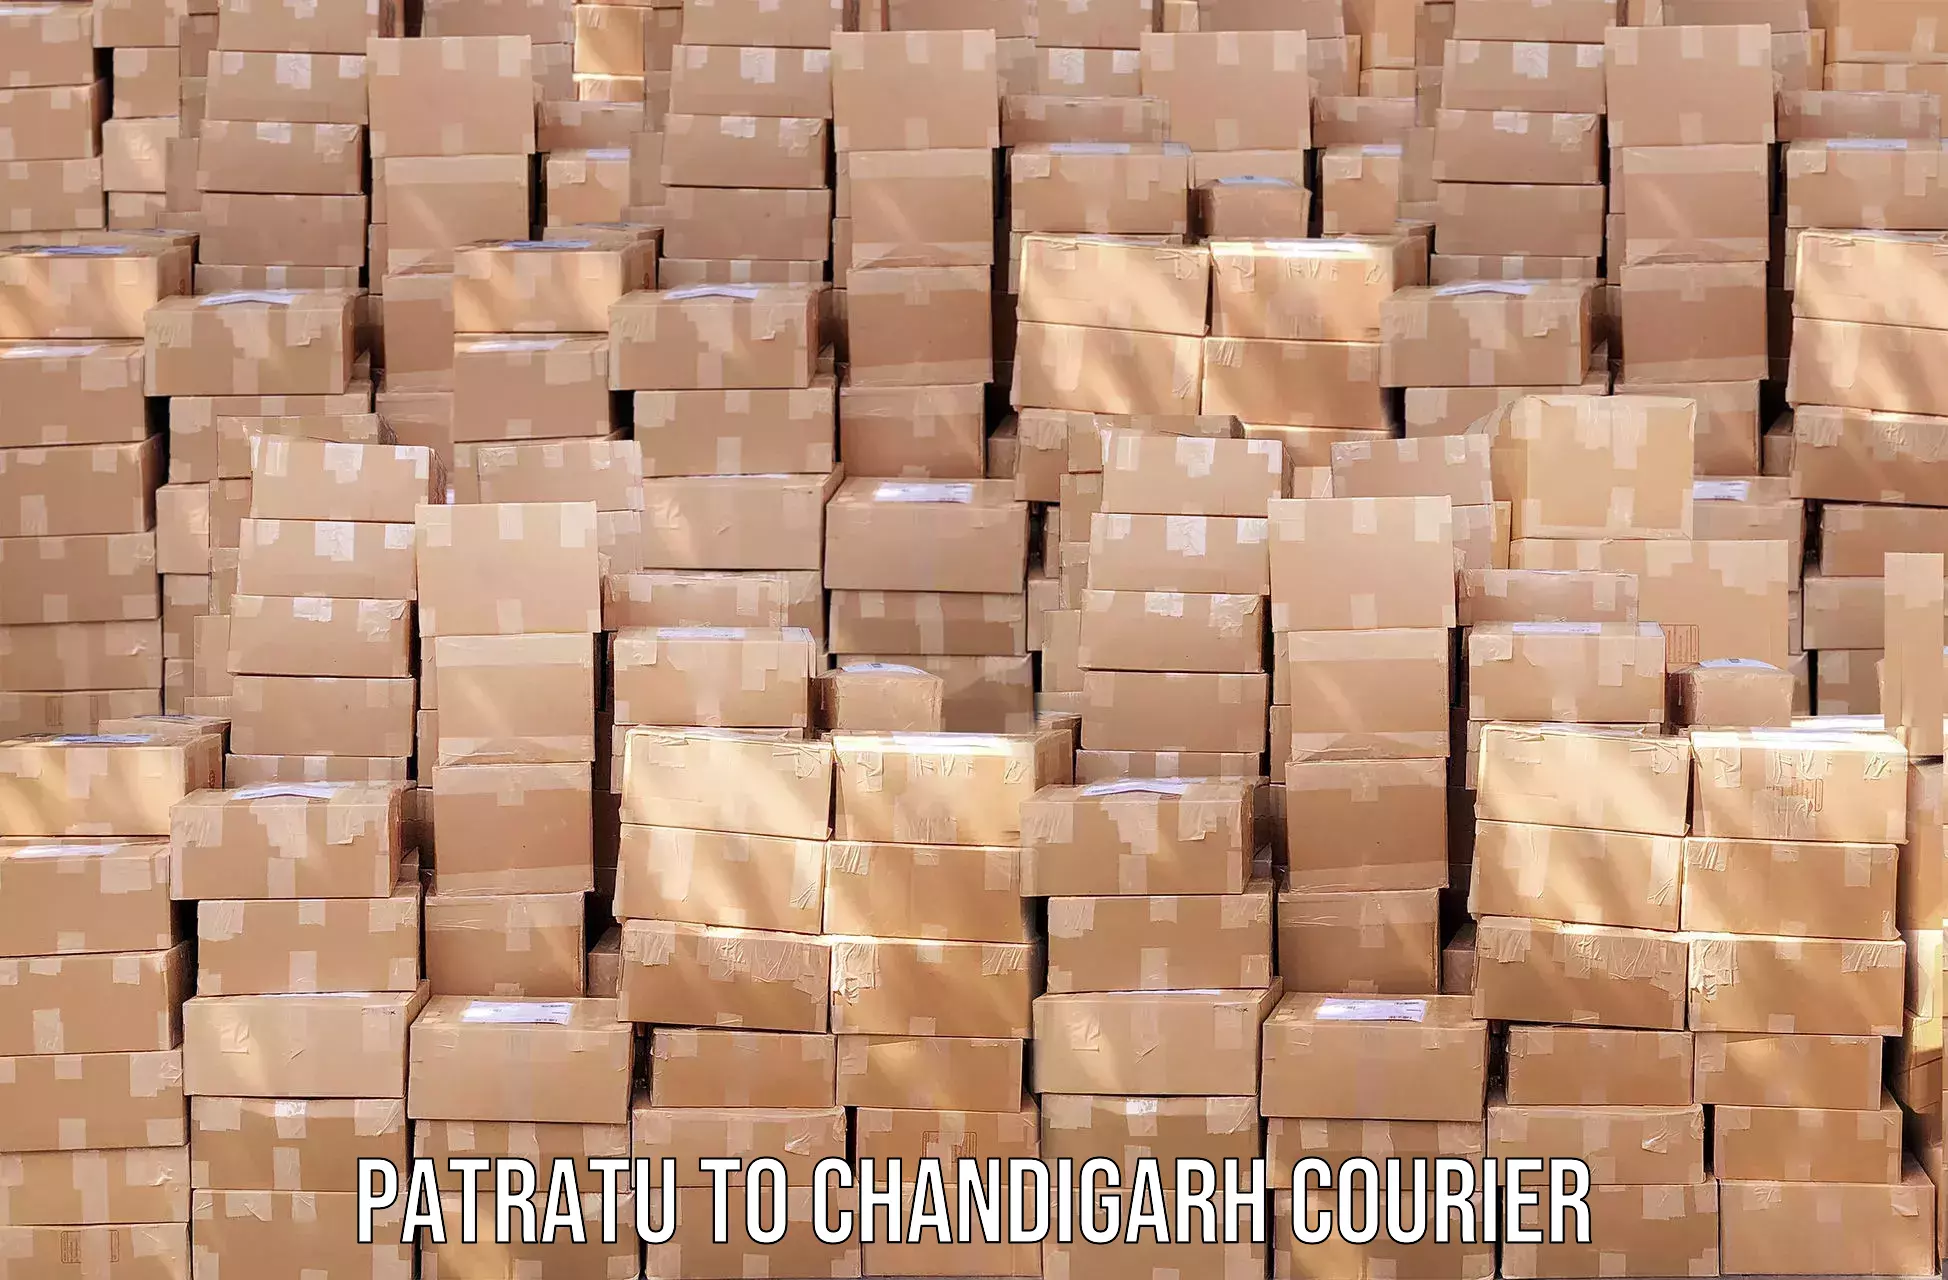 Efficient freight service Patratu to Chandigarh